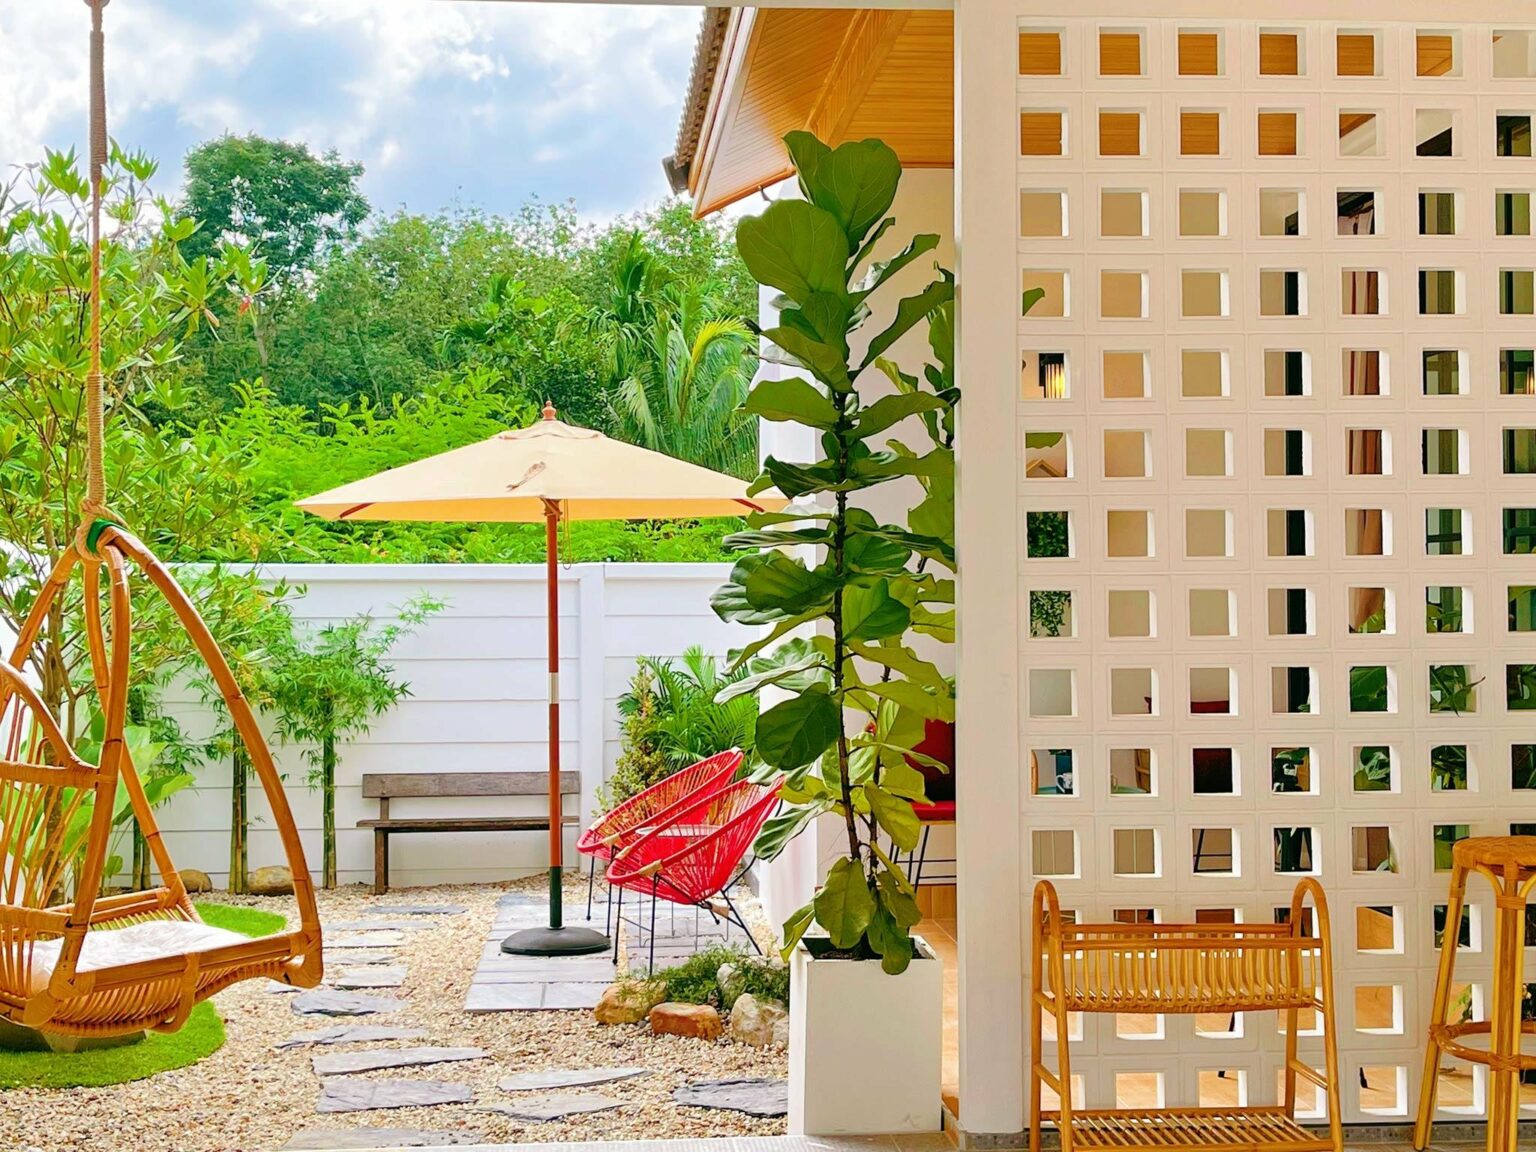 Căn nhà cấp 4 với thiết kế “siêu đỉnh”, trông đơn giản nhưng “đáng sống” nhờ hài hòa với sân vườn thư giãn xung quanh